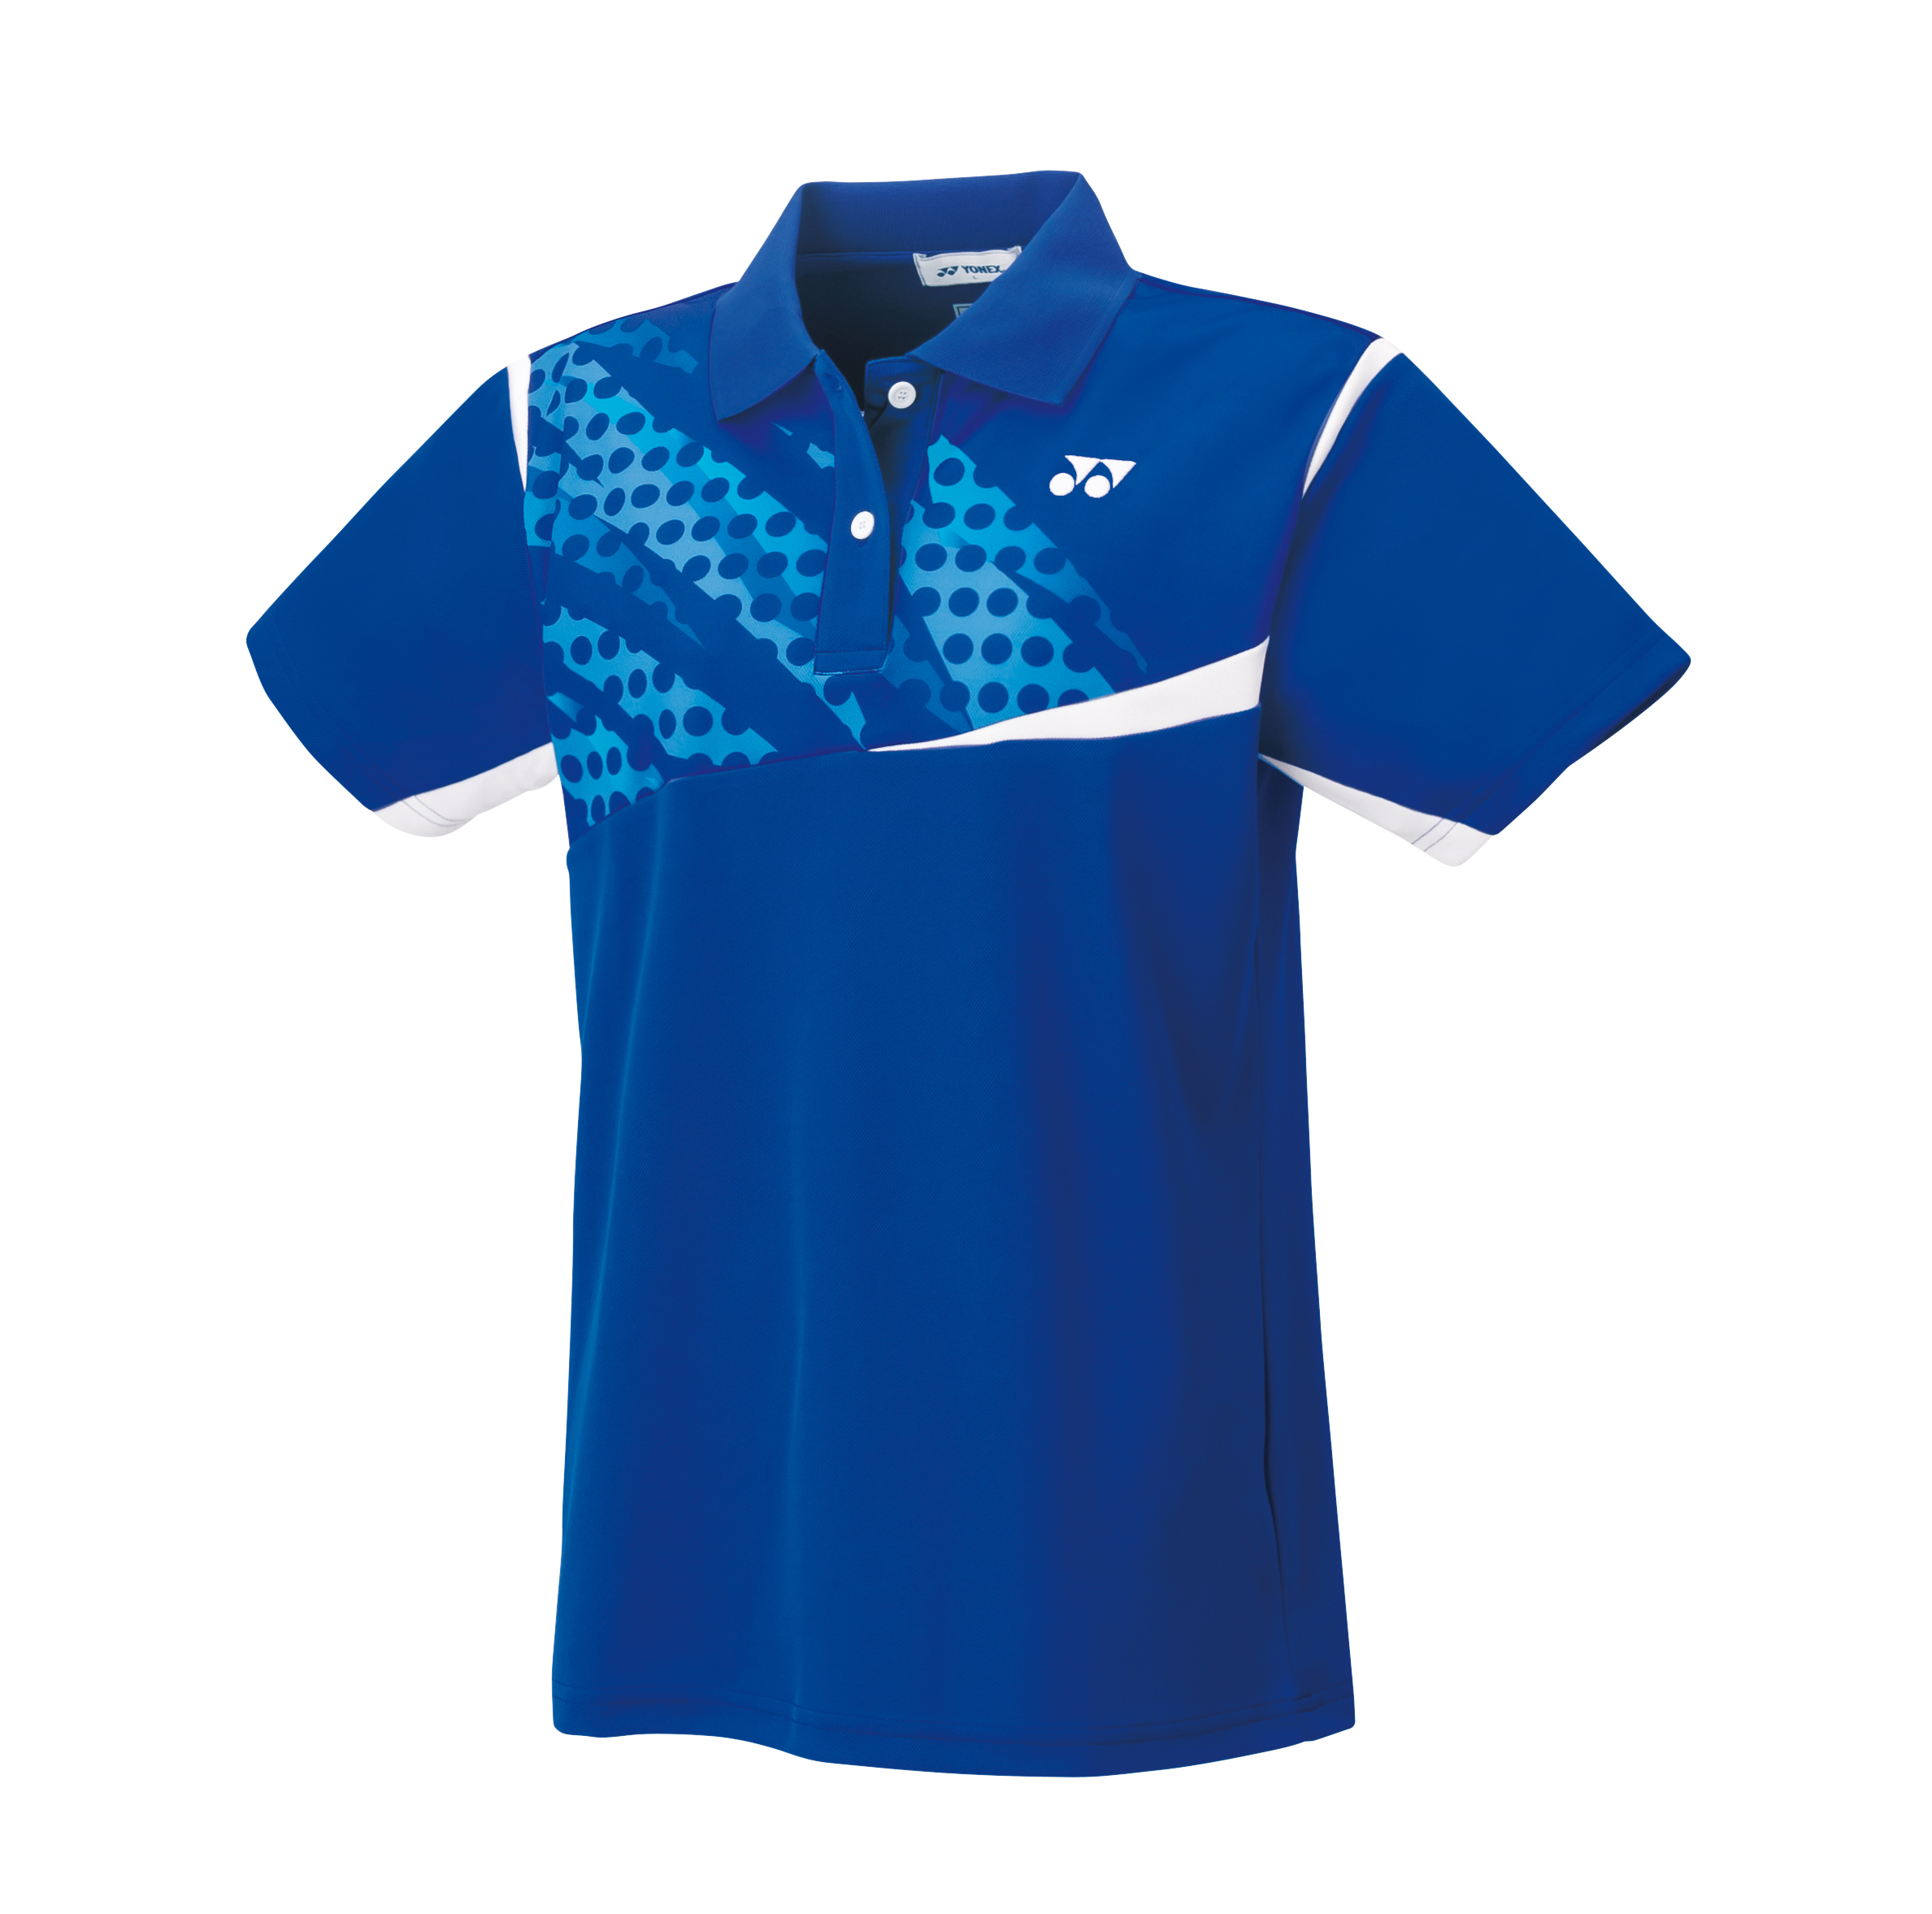 ヨネックス テニス ウィメンズゲームシャツ 全商品オープニング価格 S 激安通販 ミッドナイトネイビー